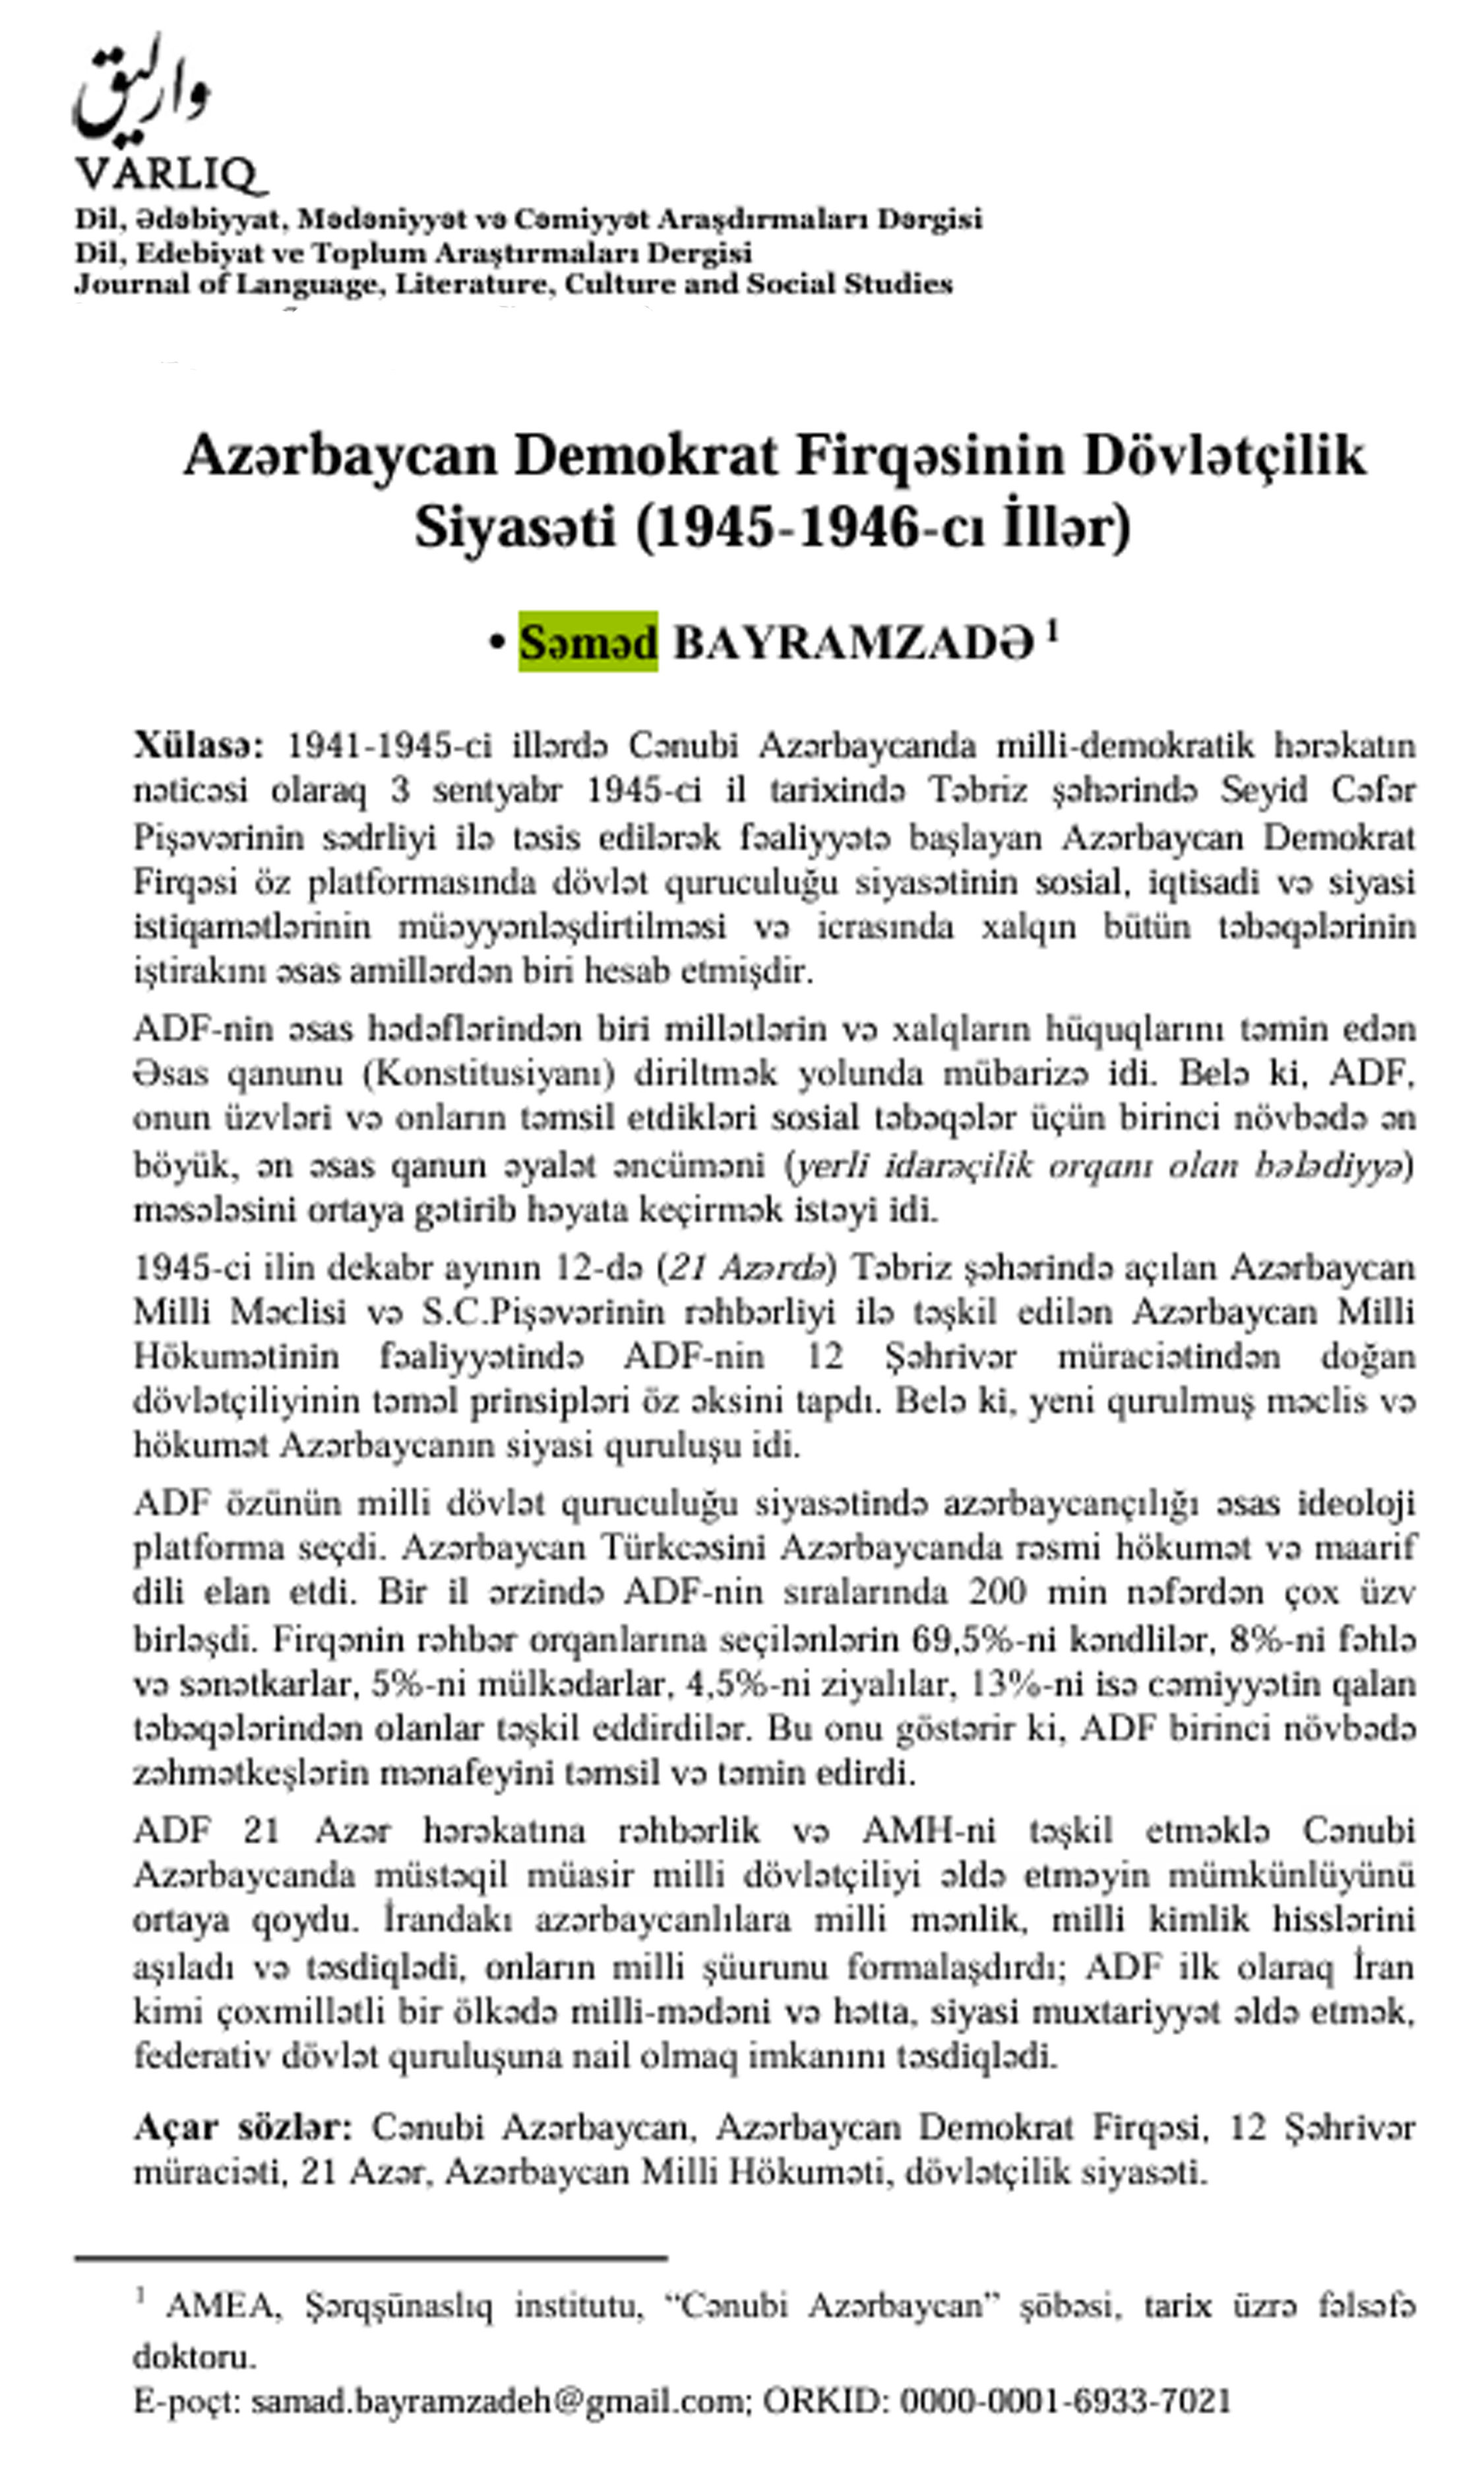 Şərqşünas alim “Varlıq” dərgisində Azərbaycan Demokrat Firqəsinin dövlətçilik siyasətindən yazıb